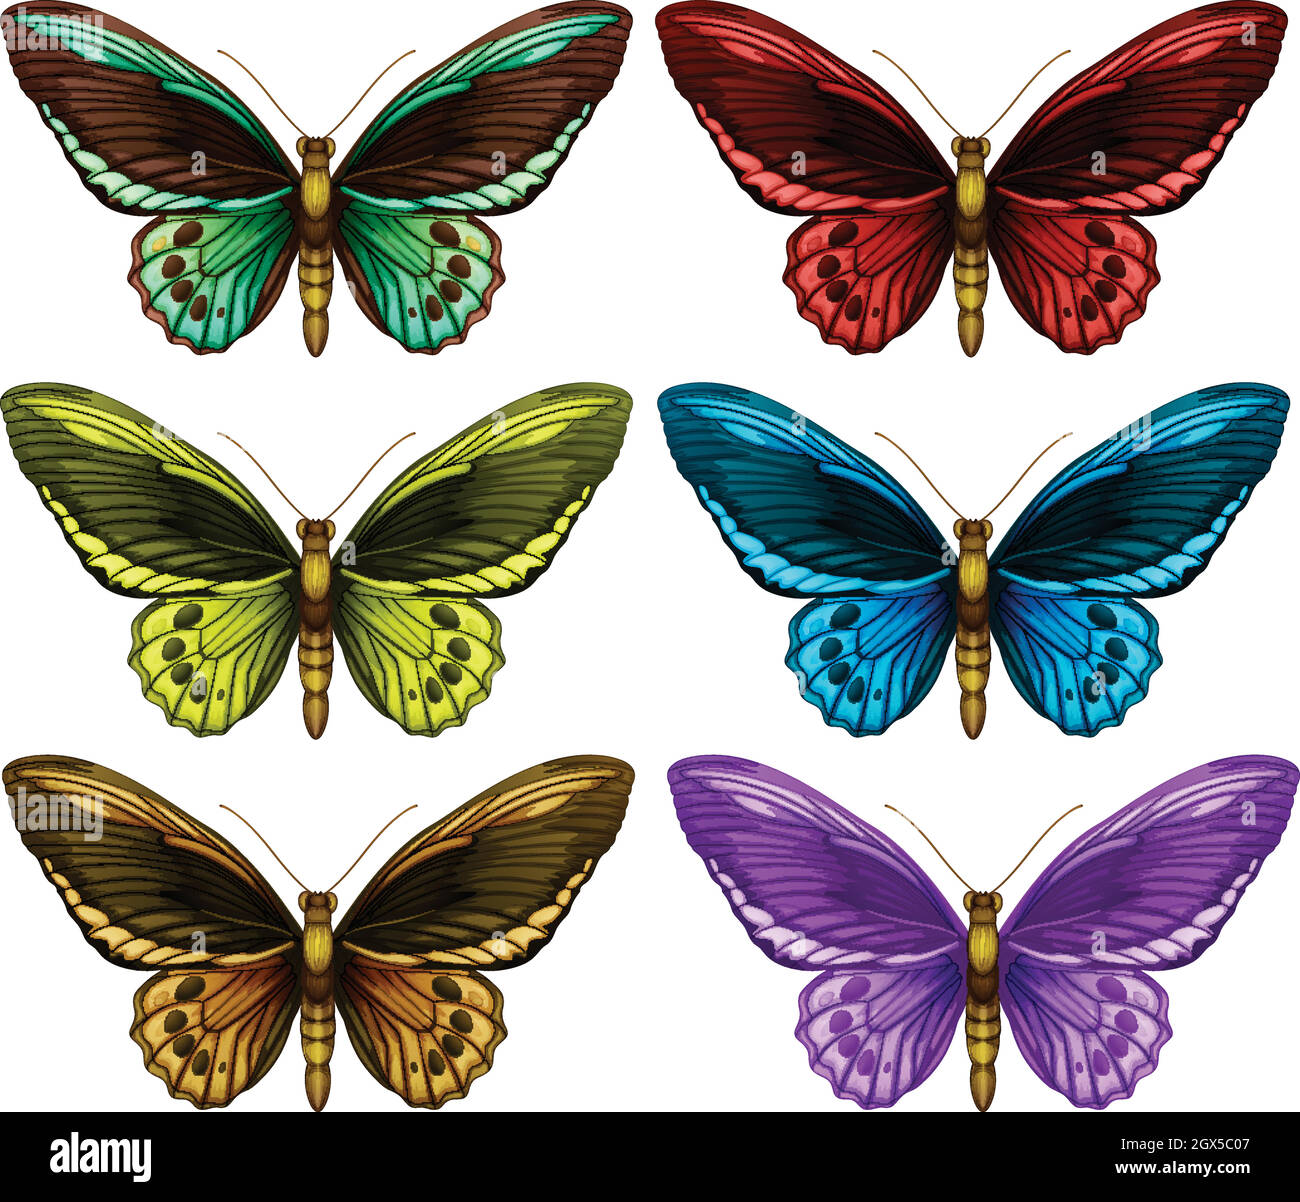 Papillons monarques dans six ailes de couleur différente Illustration de Vecteur